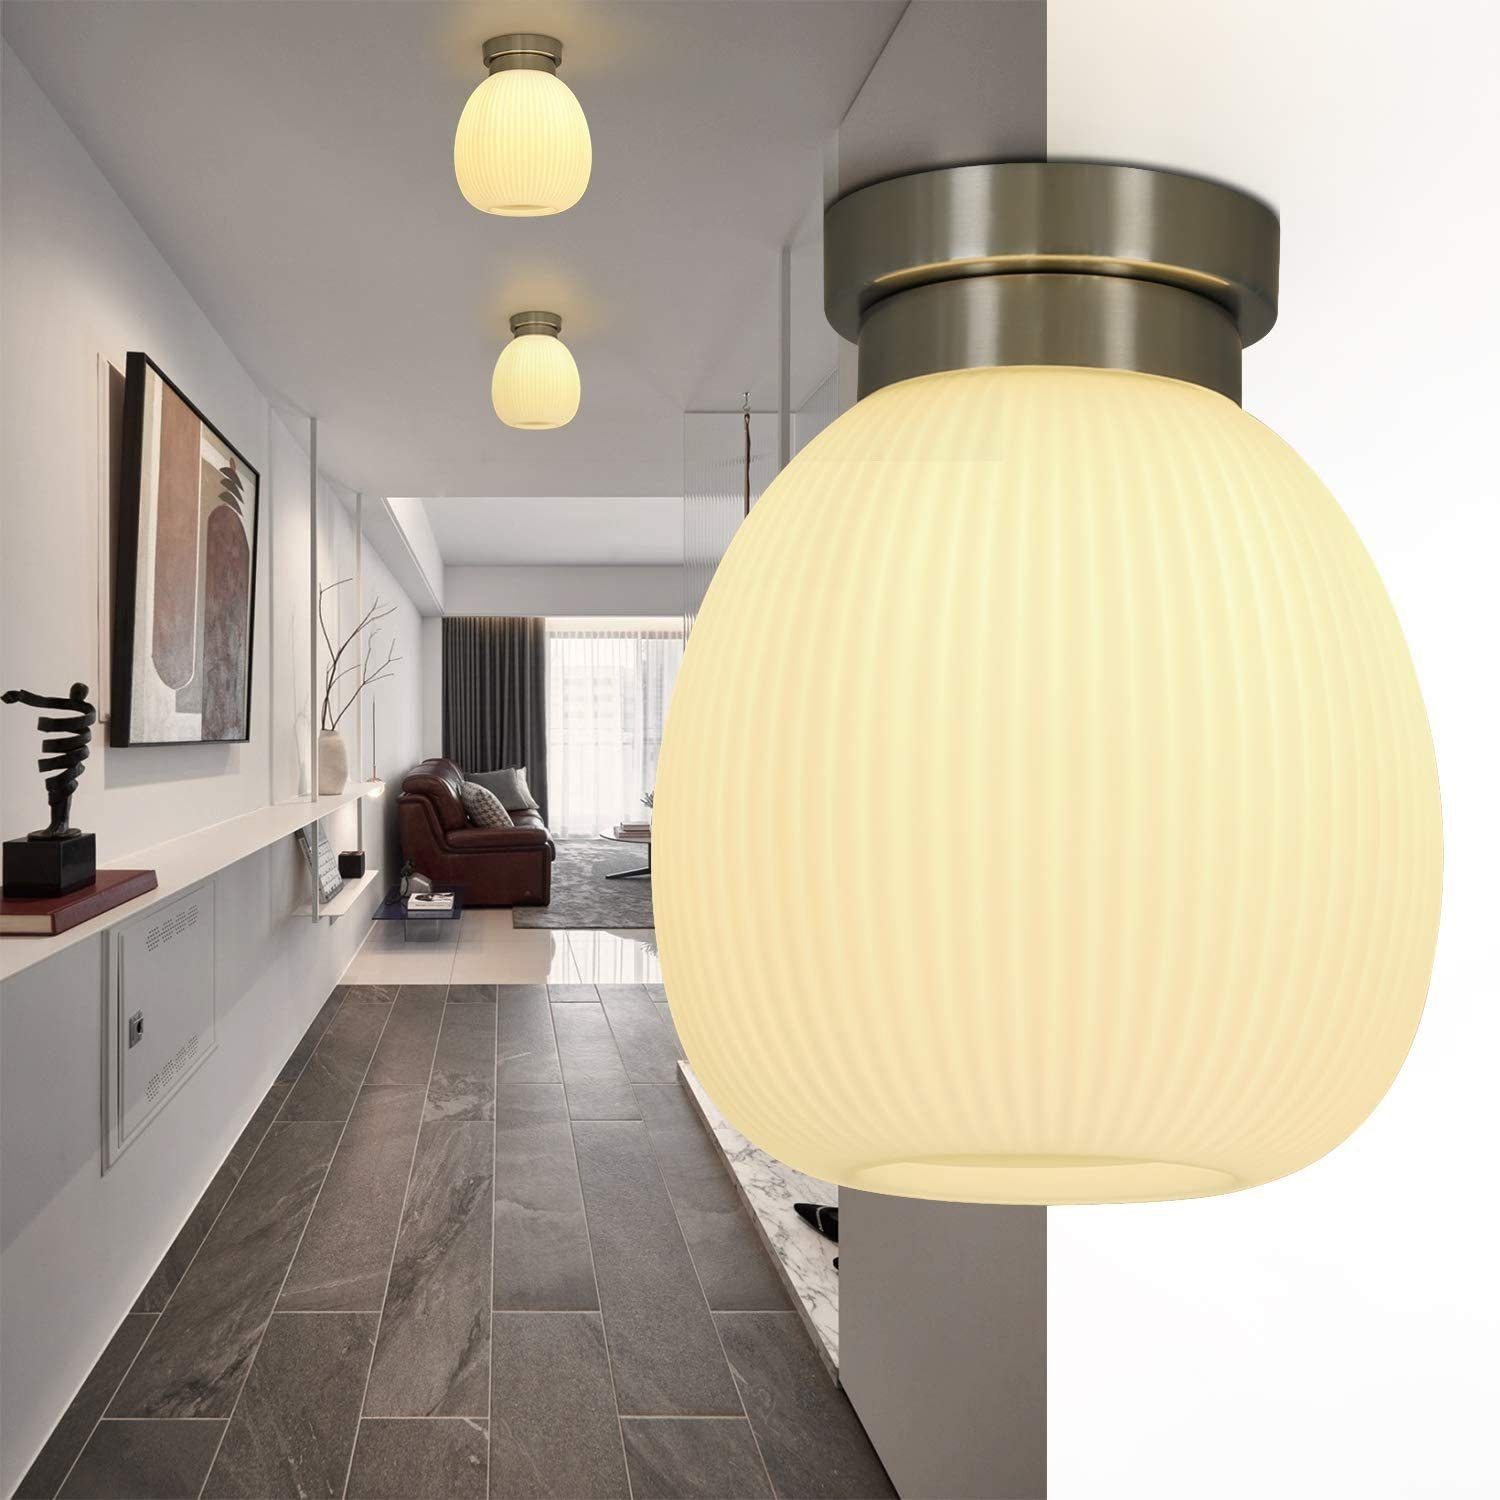 Nettlife Deckenleuchte E27 Glas Weiß Schlafzimmerlampe Moderne Flur Lampe, LED wechselbar